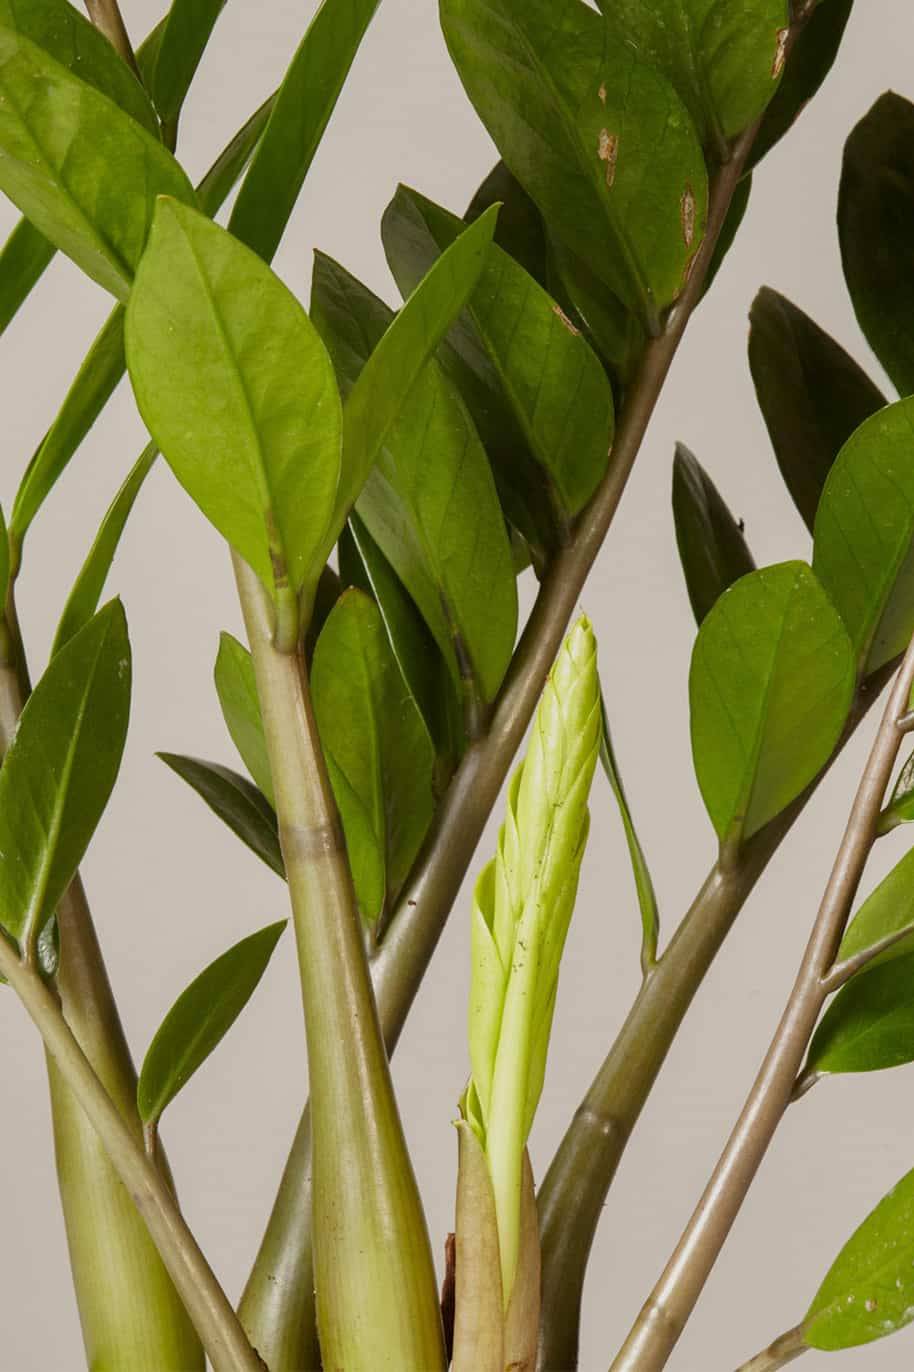 Zamioculcas Zamiifolia - ZZ Plant